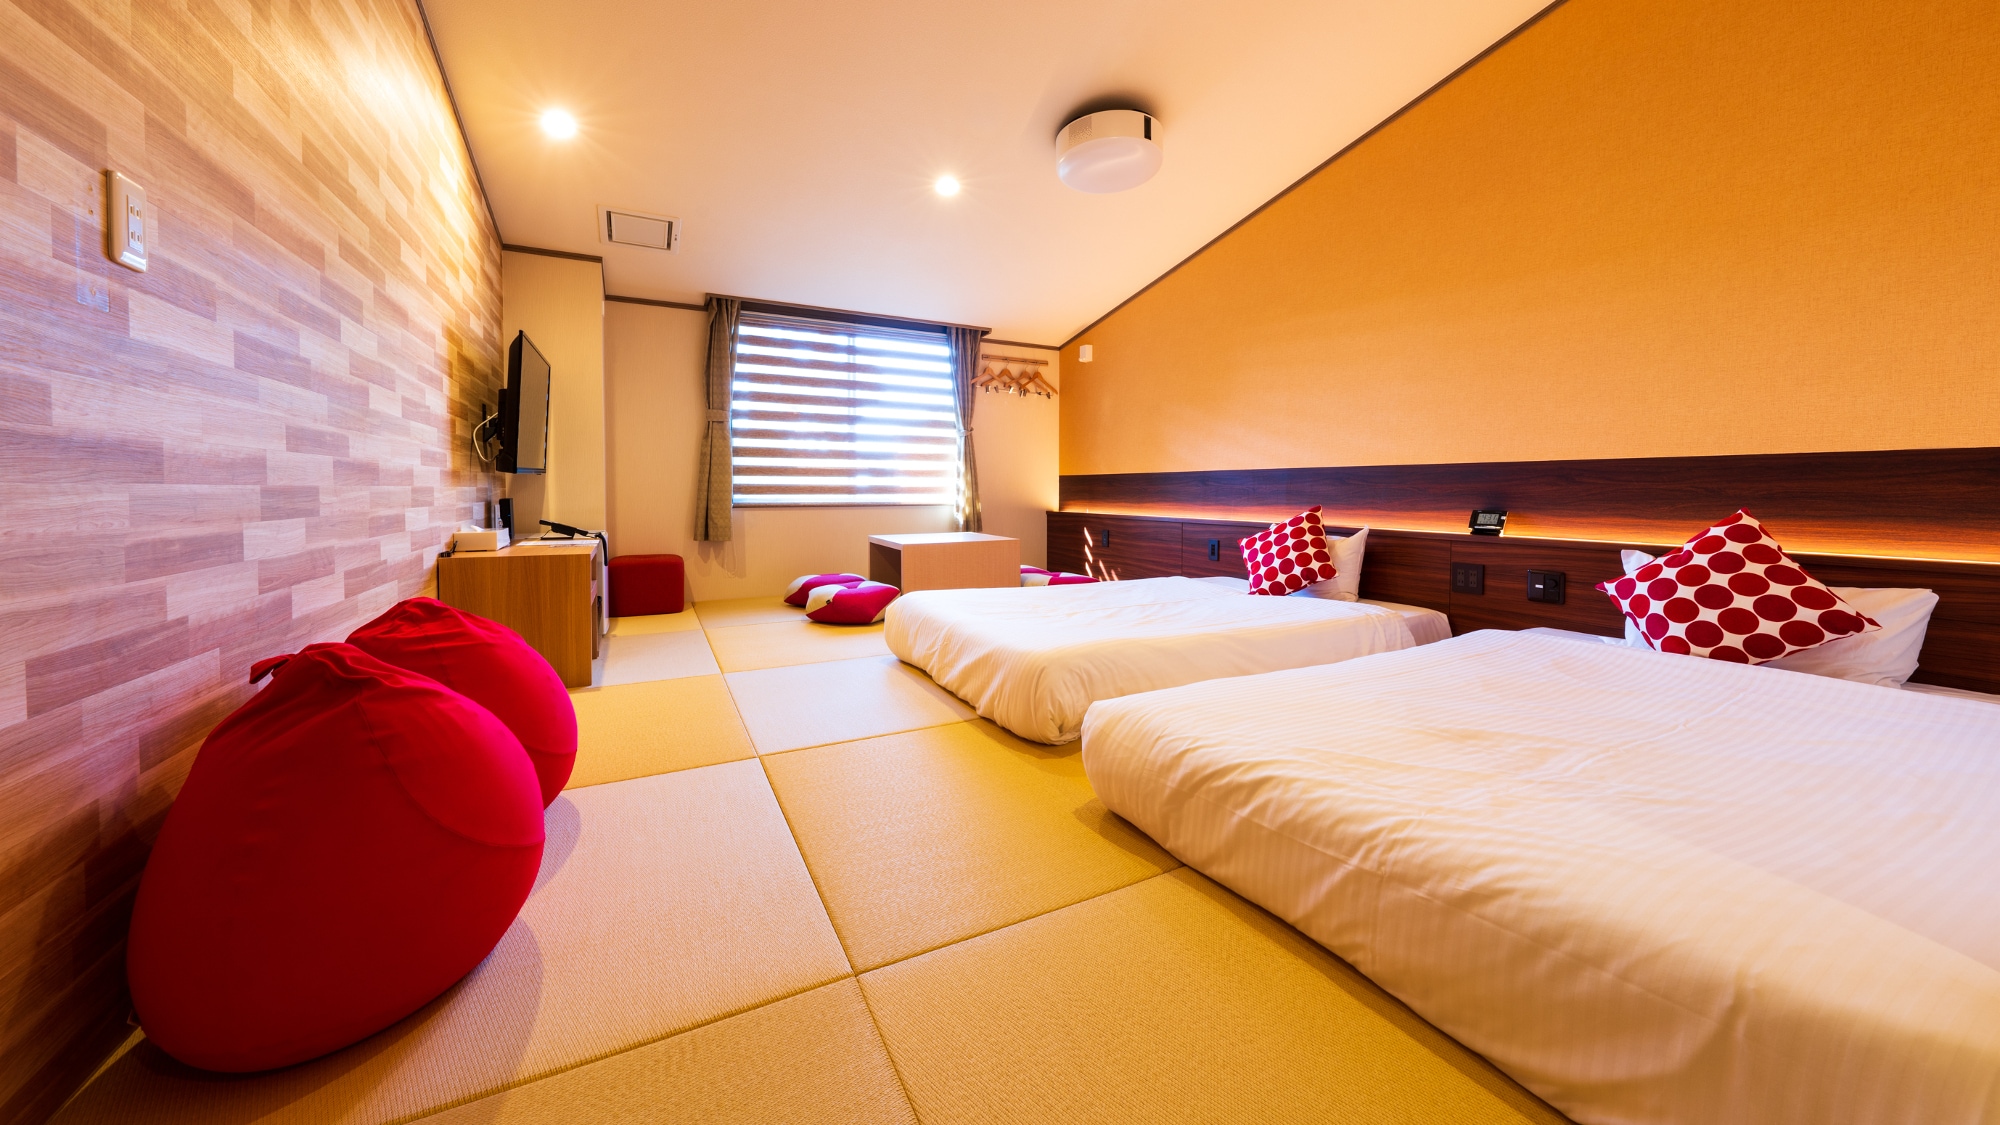 [附楼紧凑的日式房间] 一个简单的日式房间，您可以随意住宿。有了榻榻米，带小孩也可以放心！